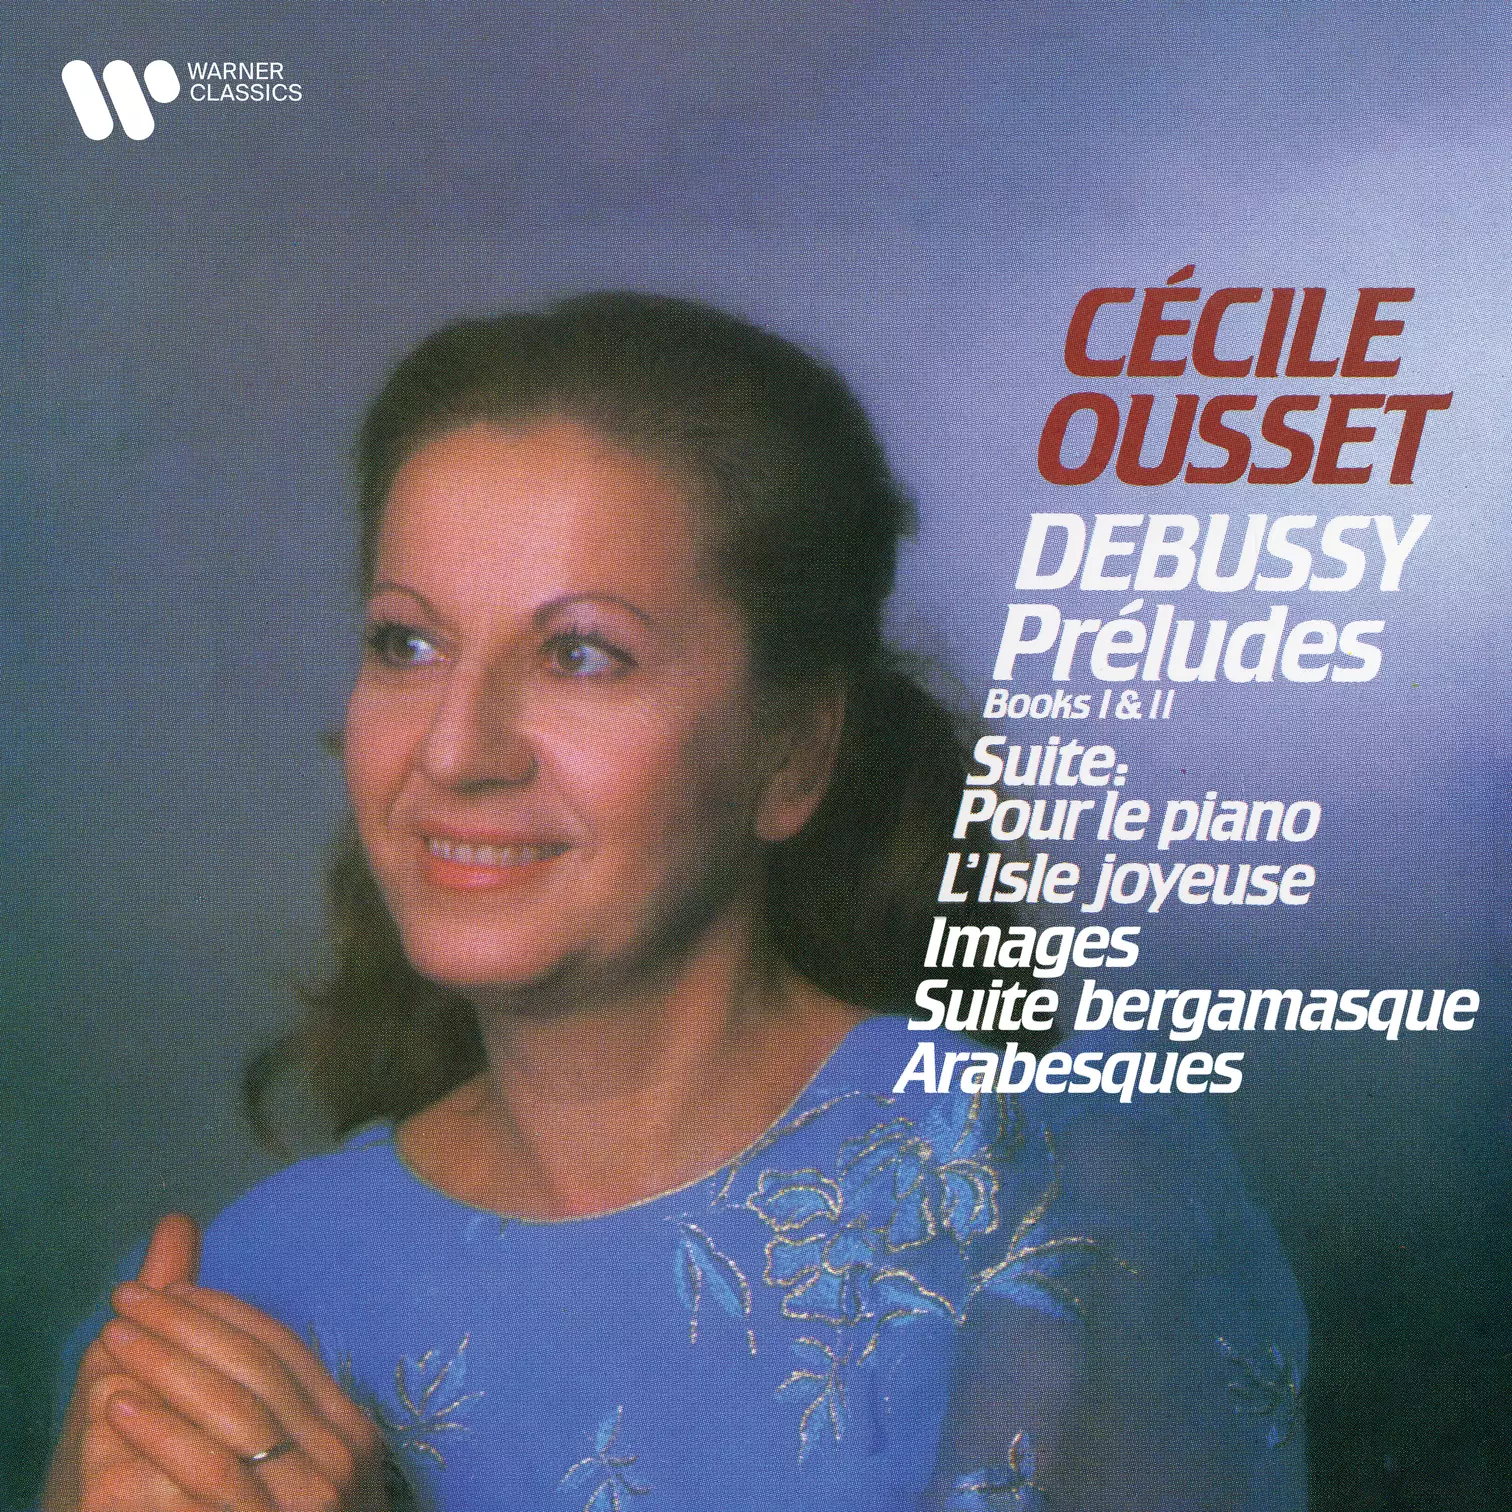 Debussy: Préludes, Pour le piano, L’Isle joyeuse, Images, Suite bergamasque & Arabesques